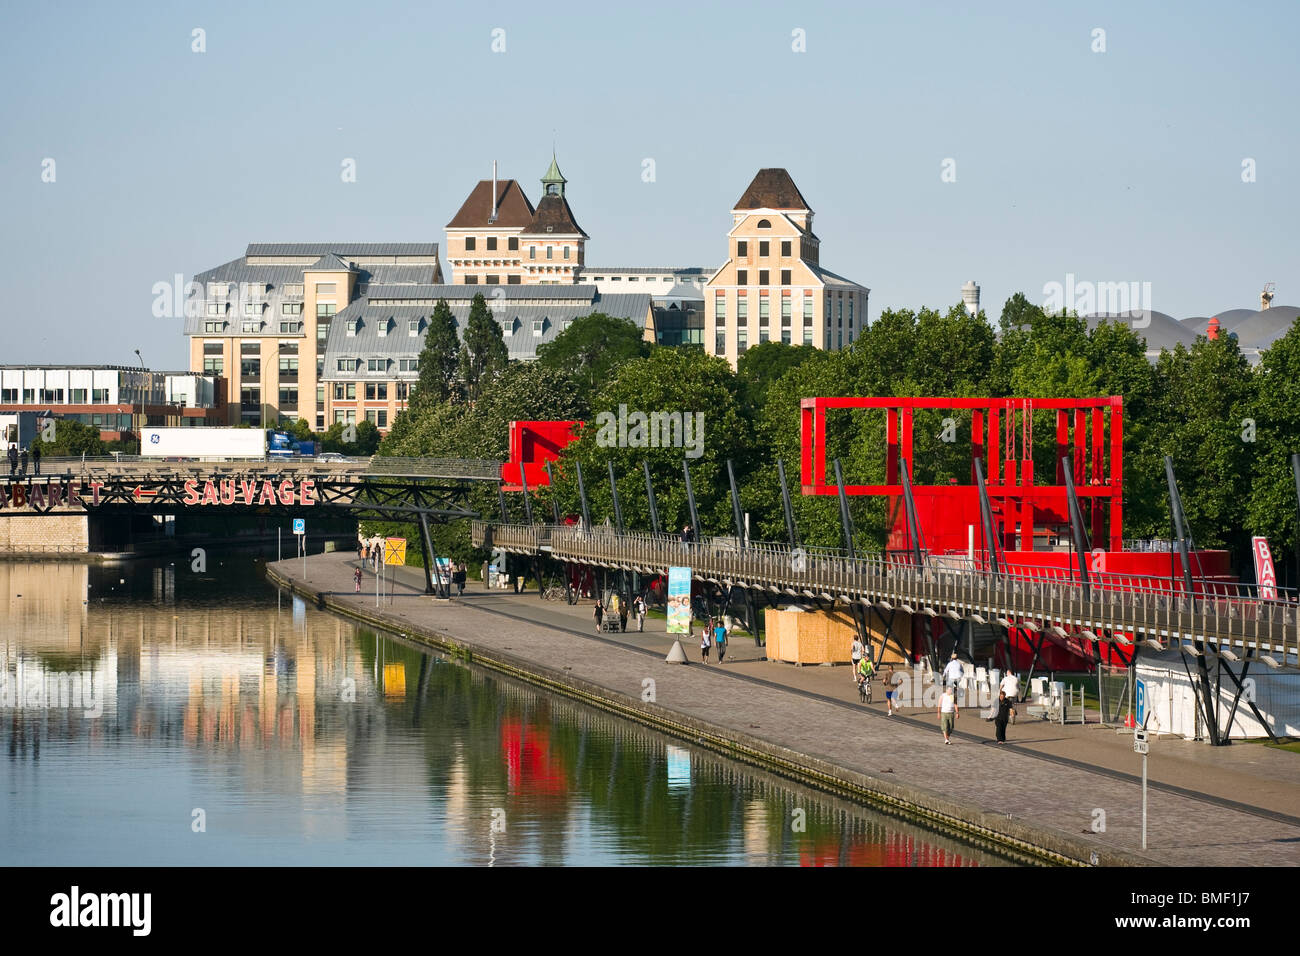 Canal de l'Ourcq and Parc de la Villette, Paris, France Stock Photo